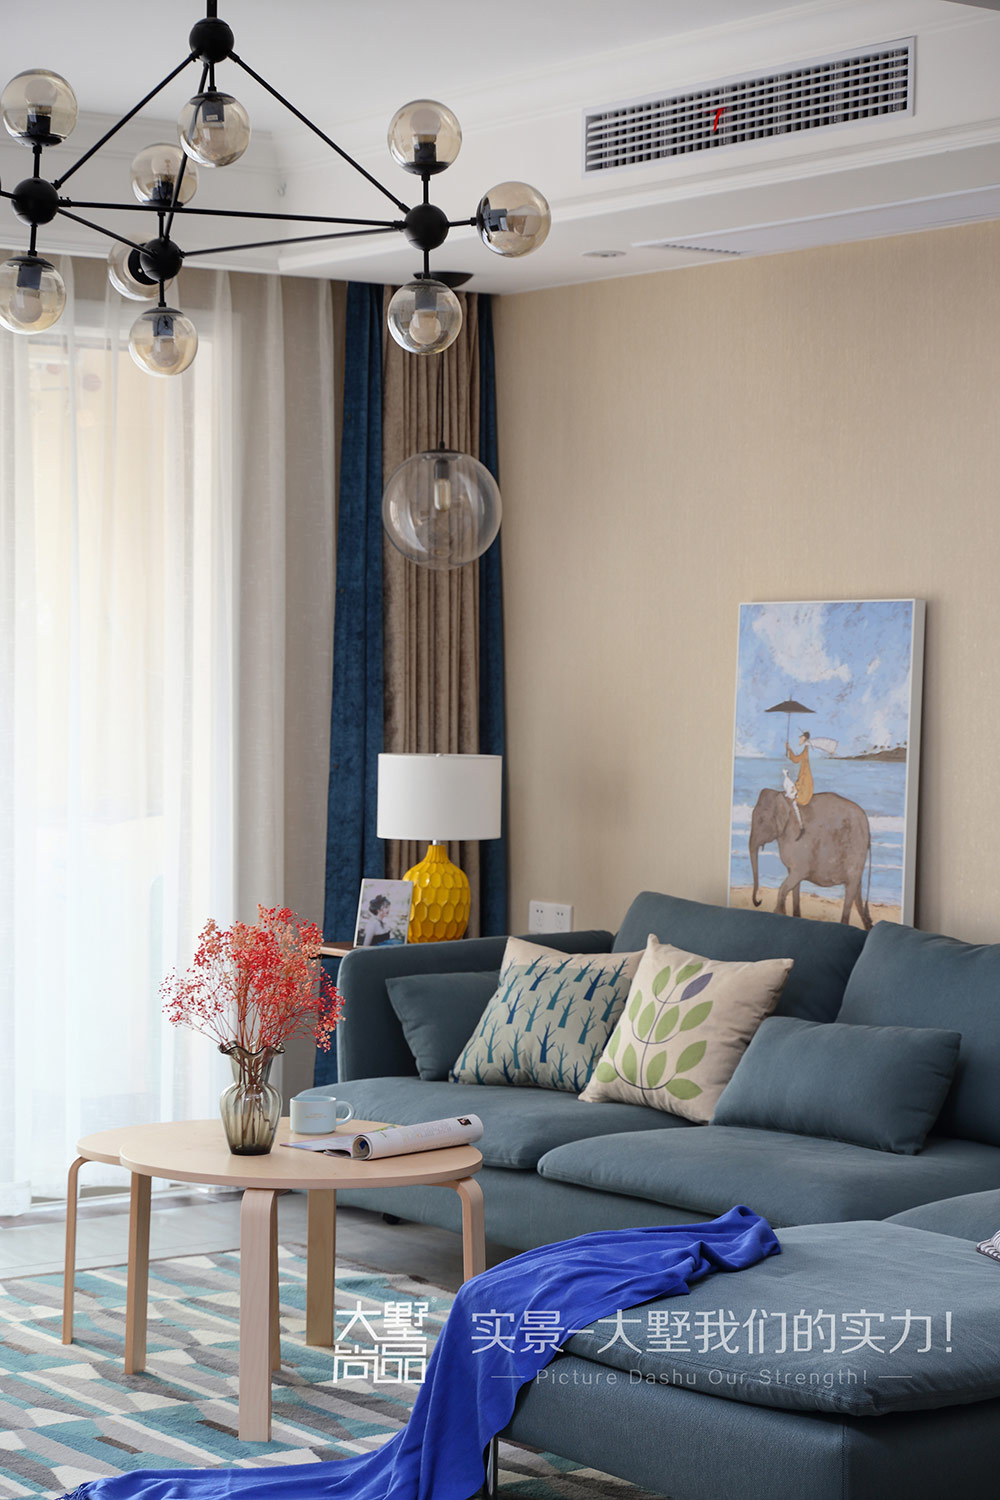 灰色系,让整个空间变得更为温馨,蓝色沙发衍生到蓝色元素的地毯和窗帘